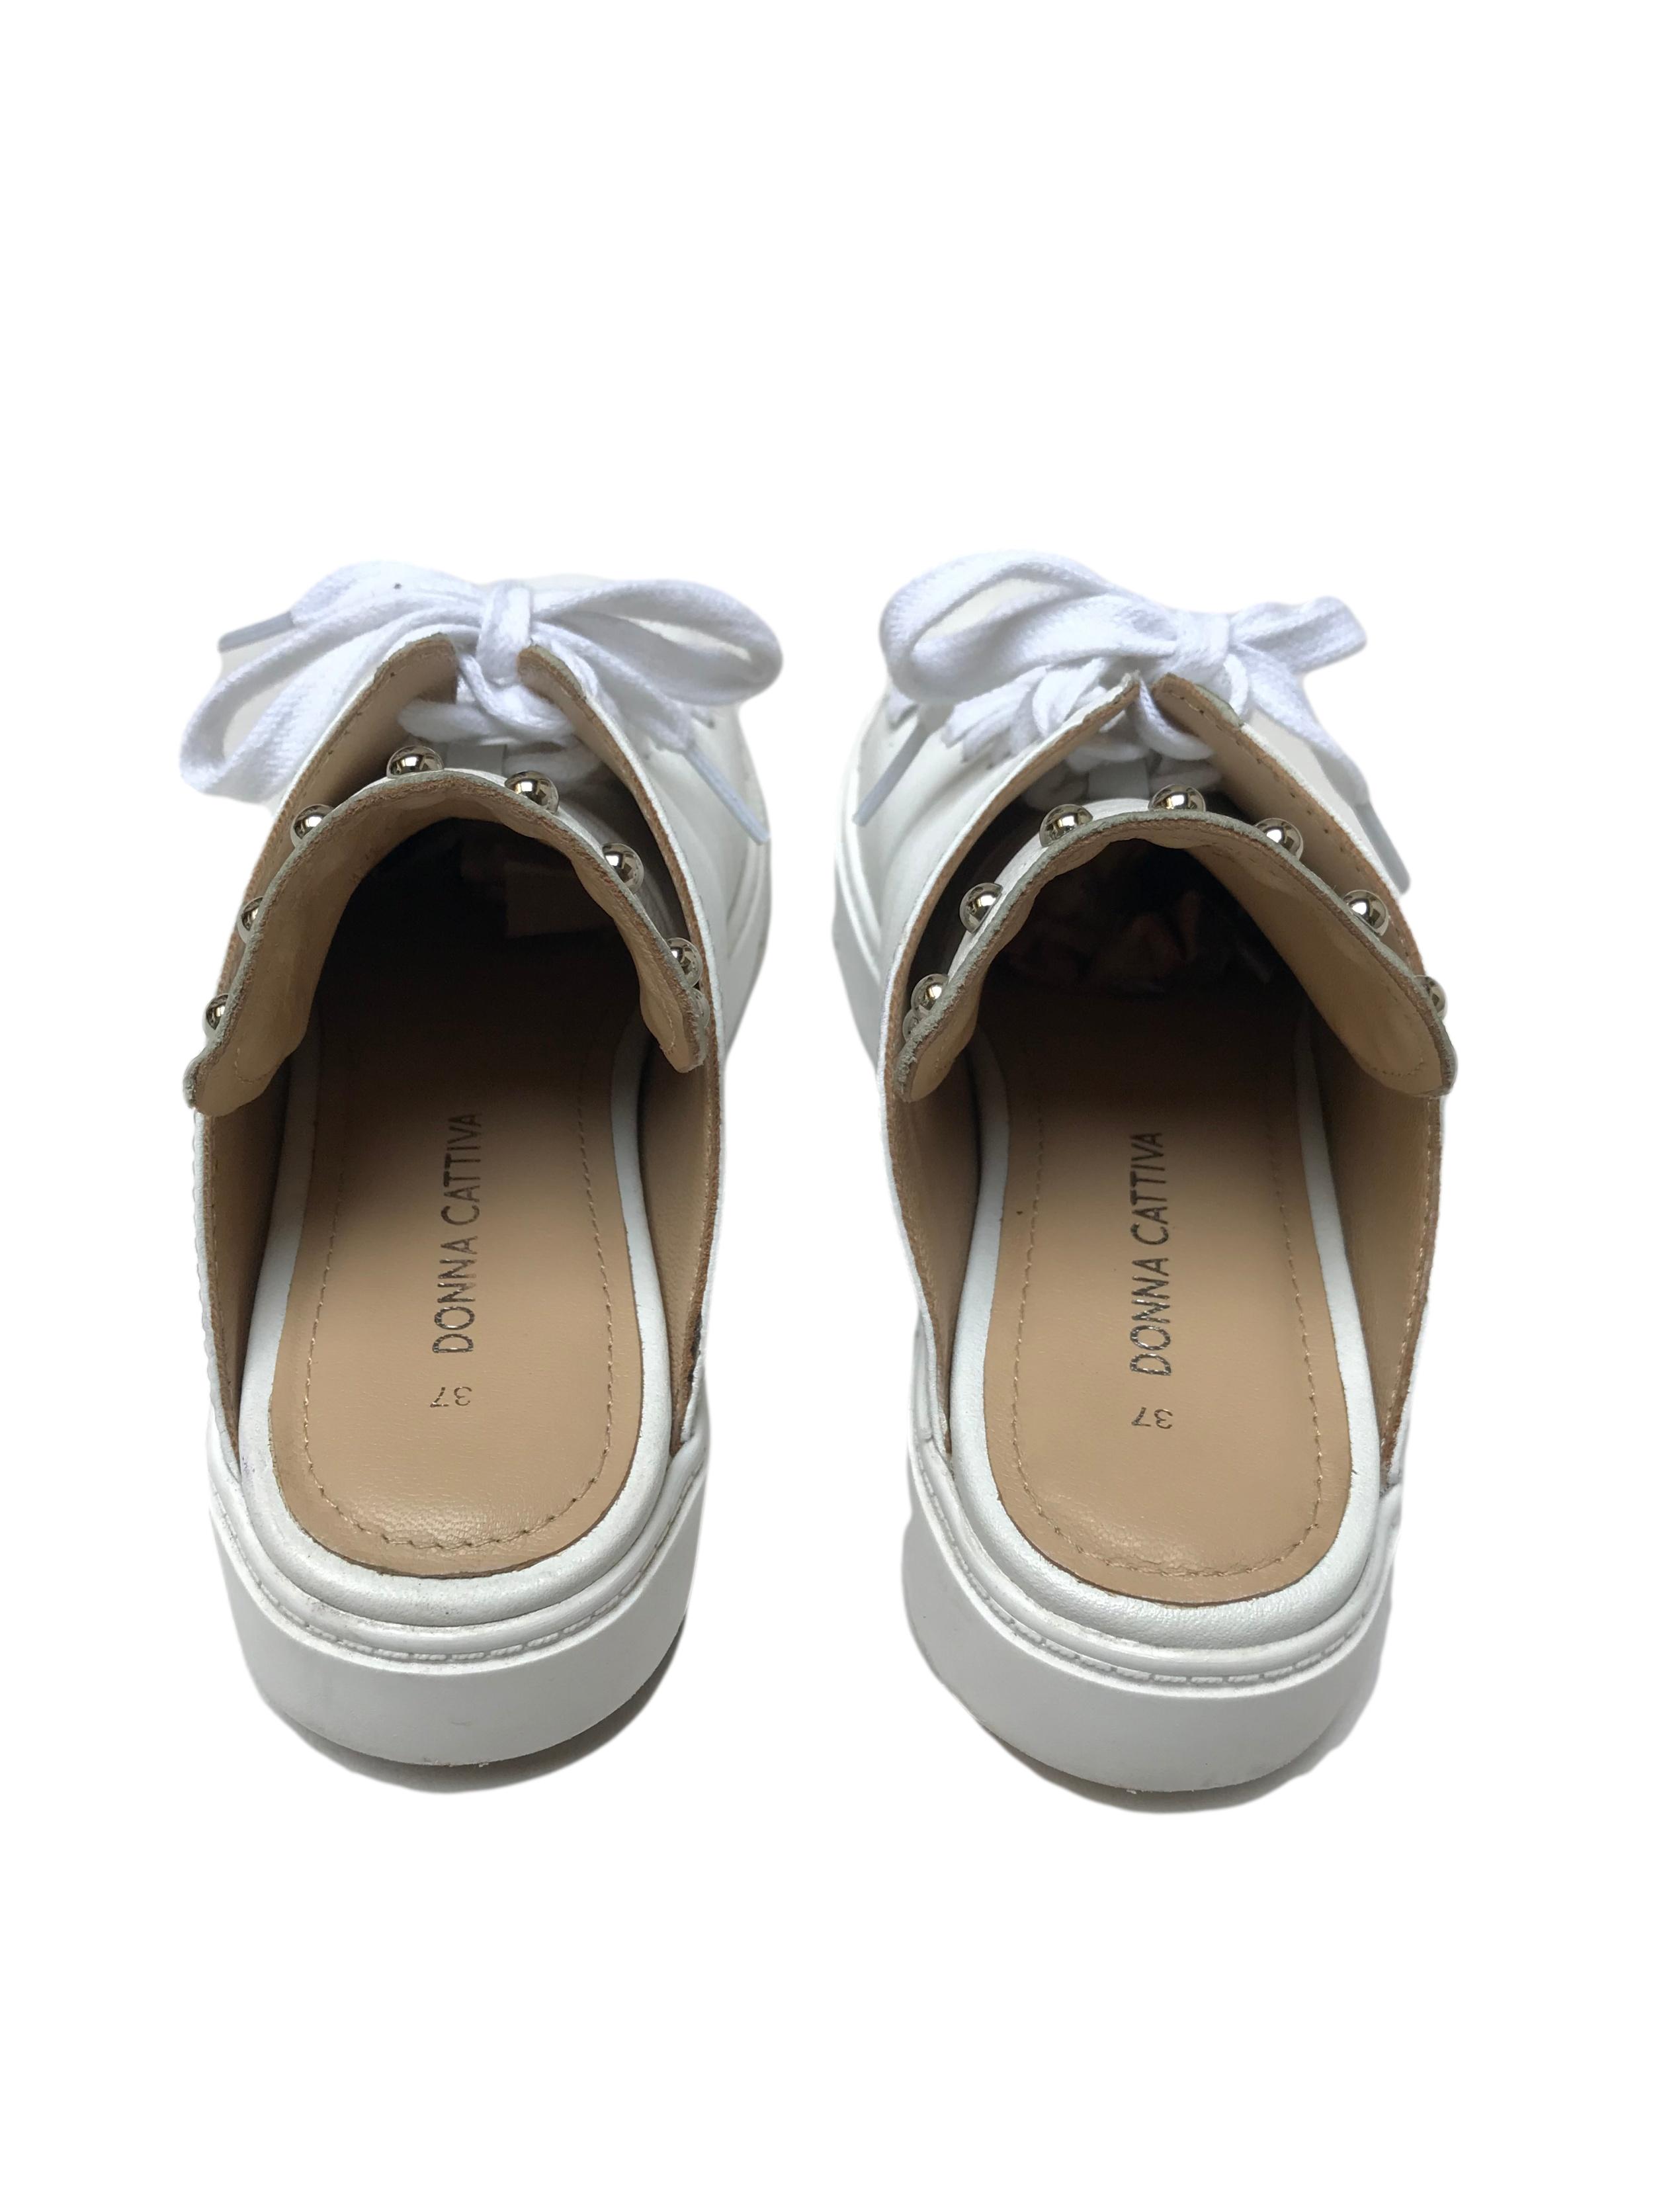 Slippers Donna Cattiva estilo zapatilla de cuero blanco con aplicaciones plateadas en la lengüeta. Estado 8.5/10. Precio original S/ 300